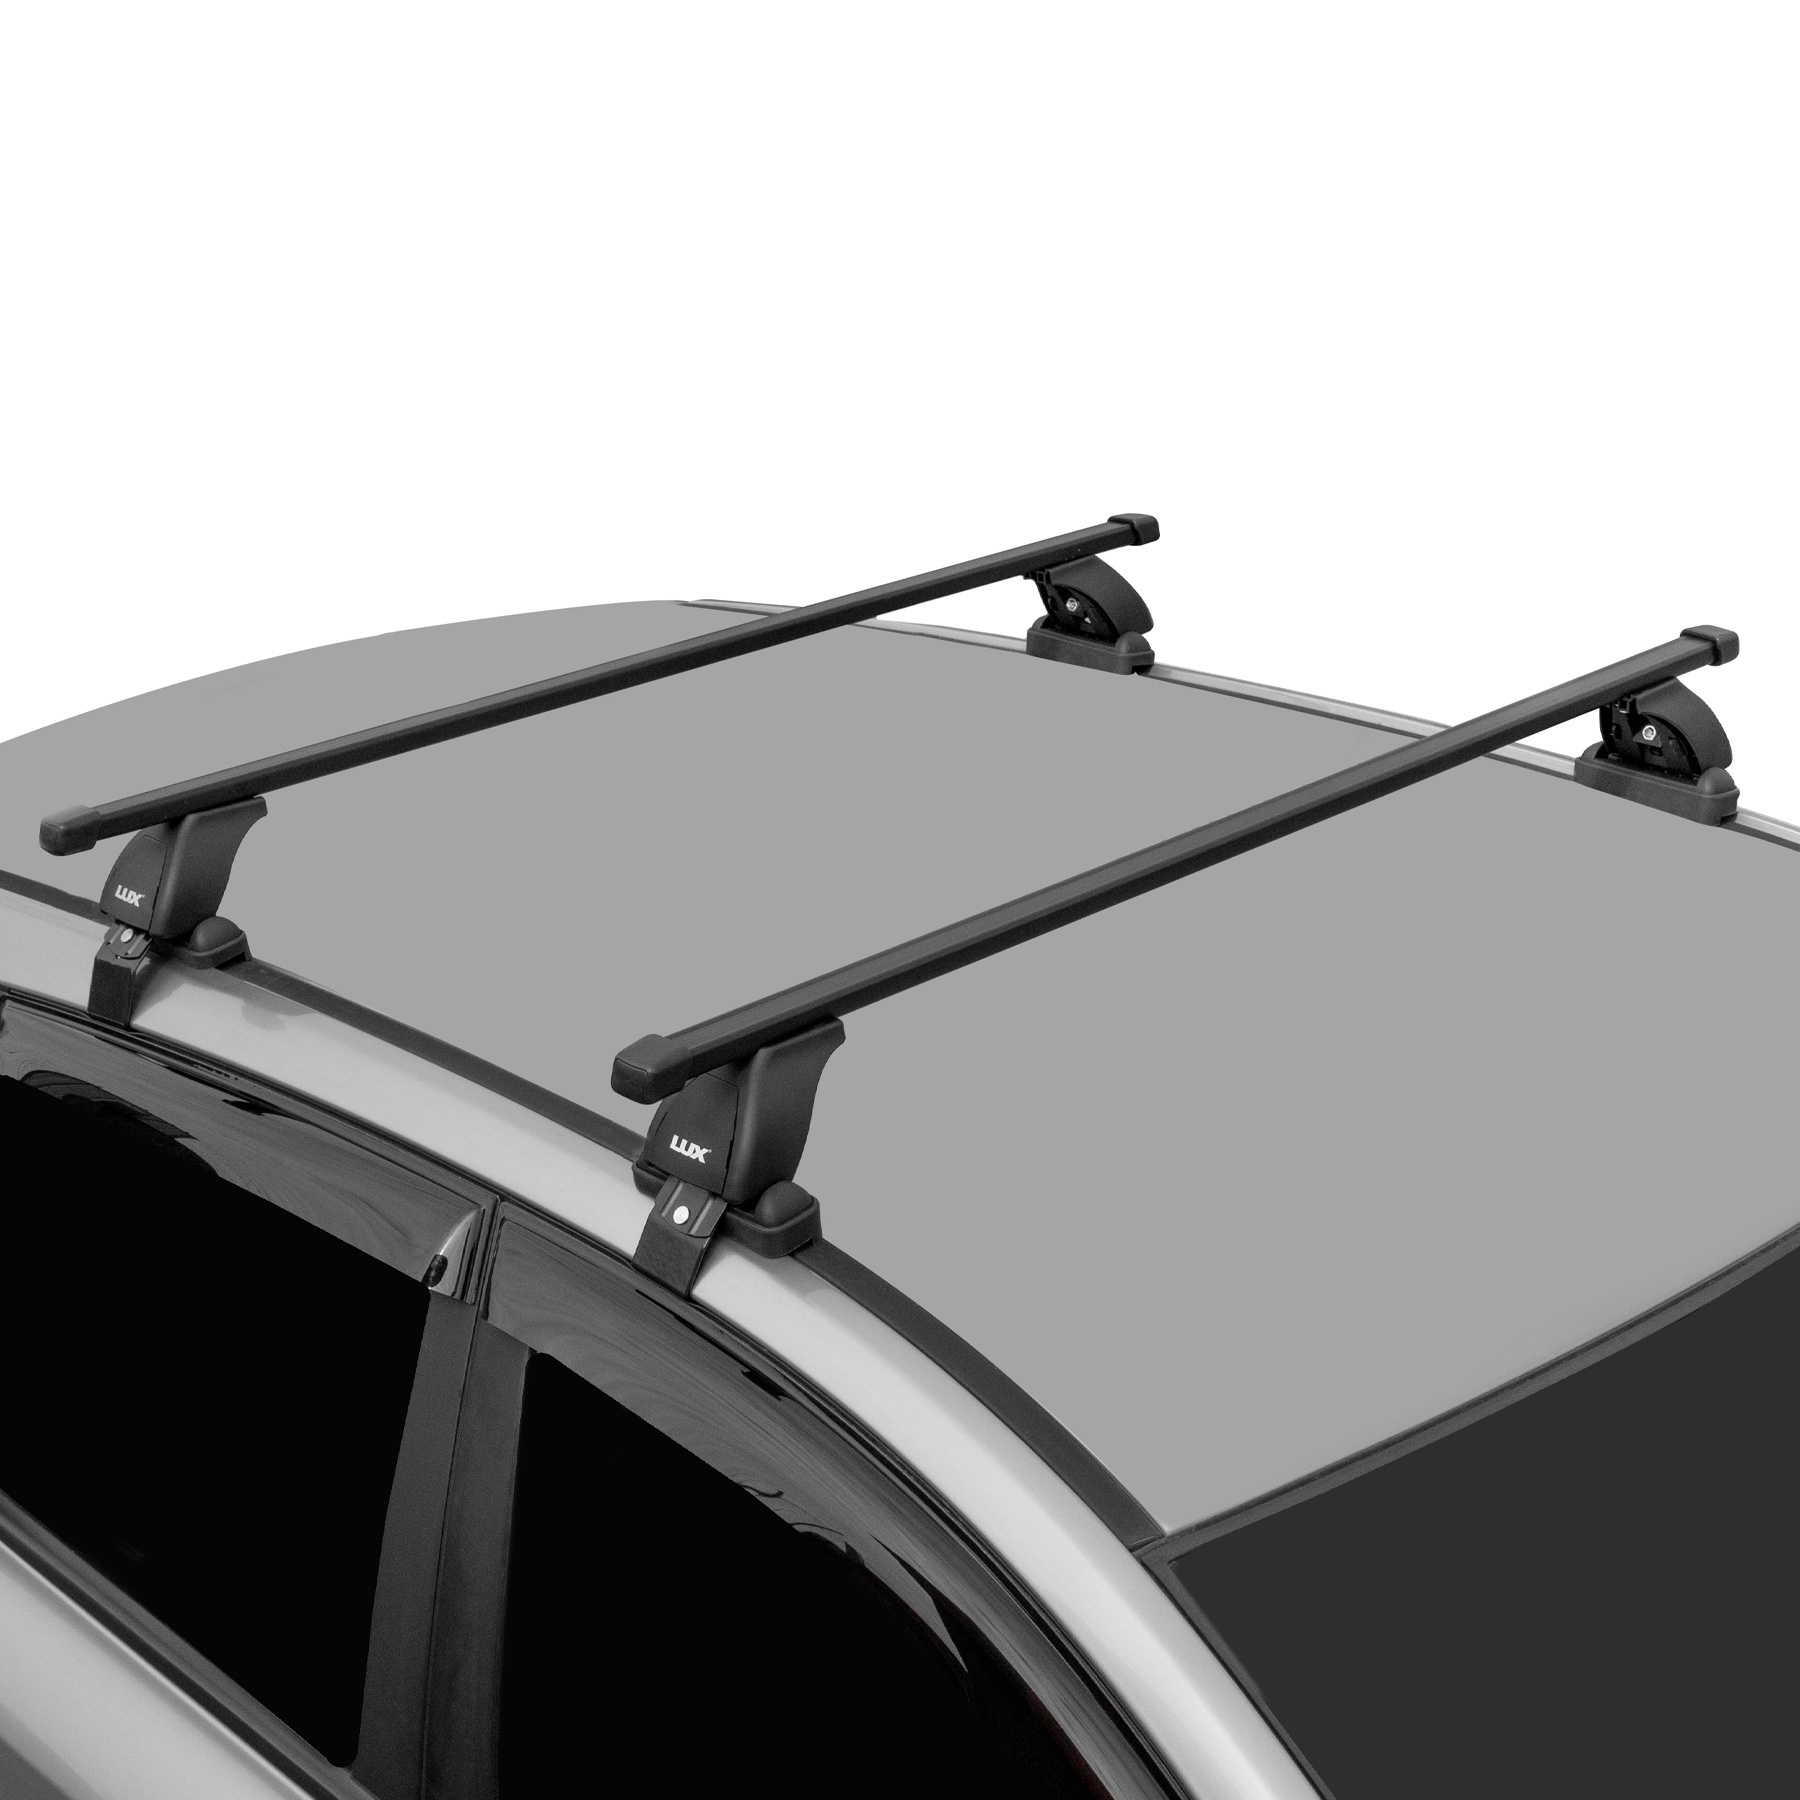 Багажник на крышу авто: виды, способы креплений, достоинства и недостатки